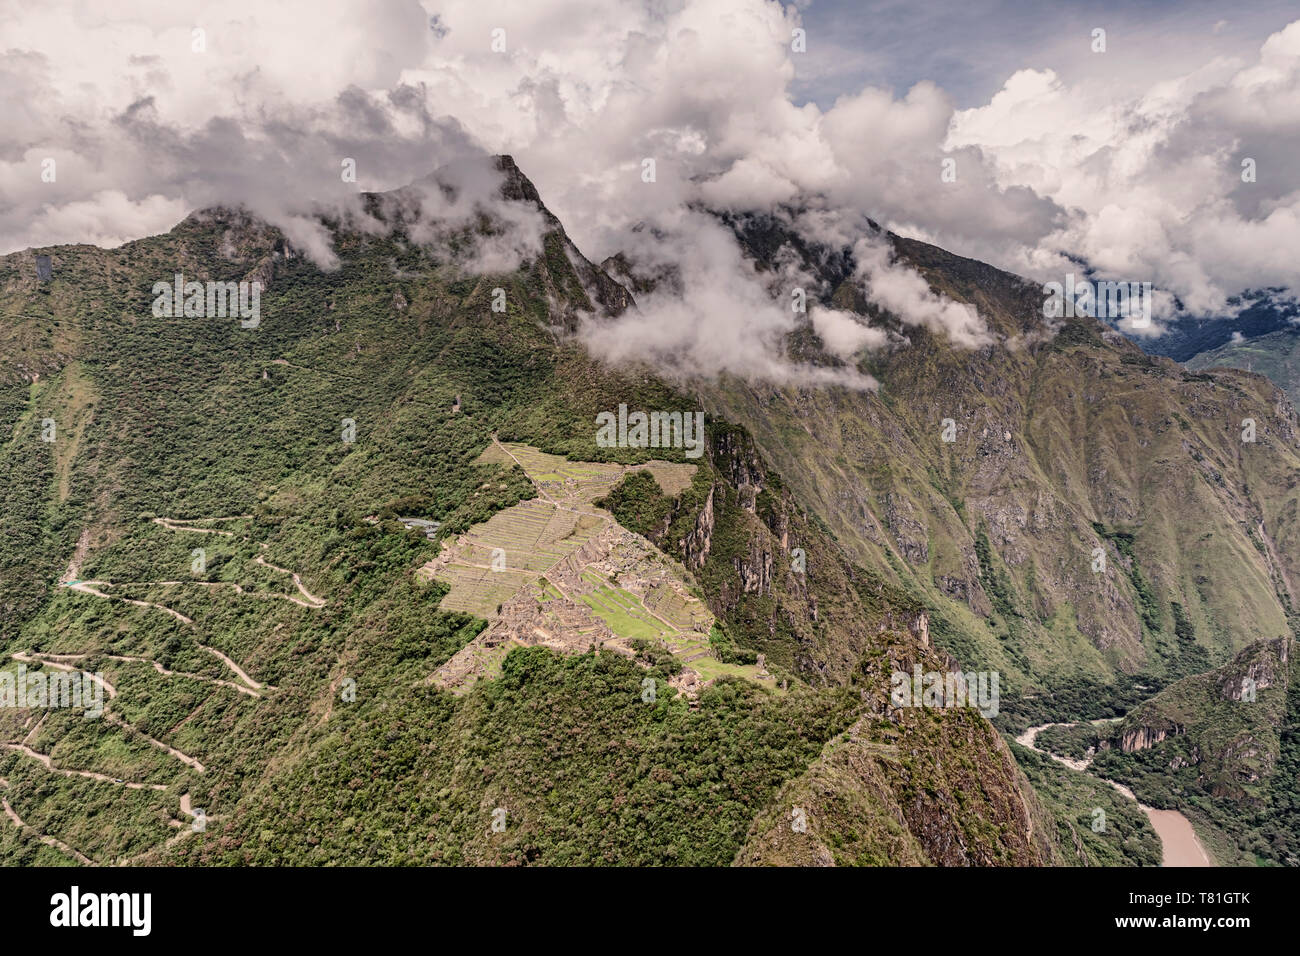 Luftbild vom Wayna, Huayna Picchu Peak bei Machu Picchu Inkas City Komplex und Machu Picchu Mountain Peak in den Hintergrund. Entfernt Stockfoto